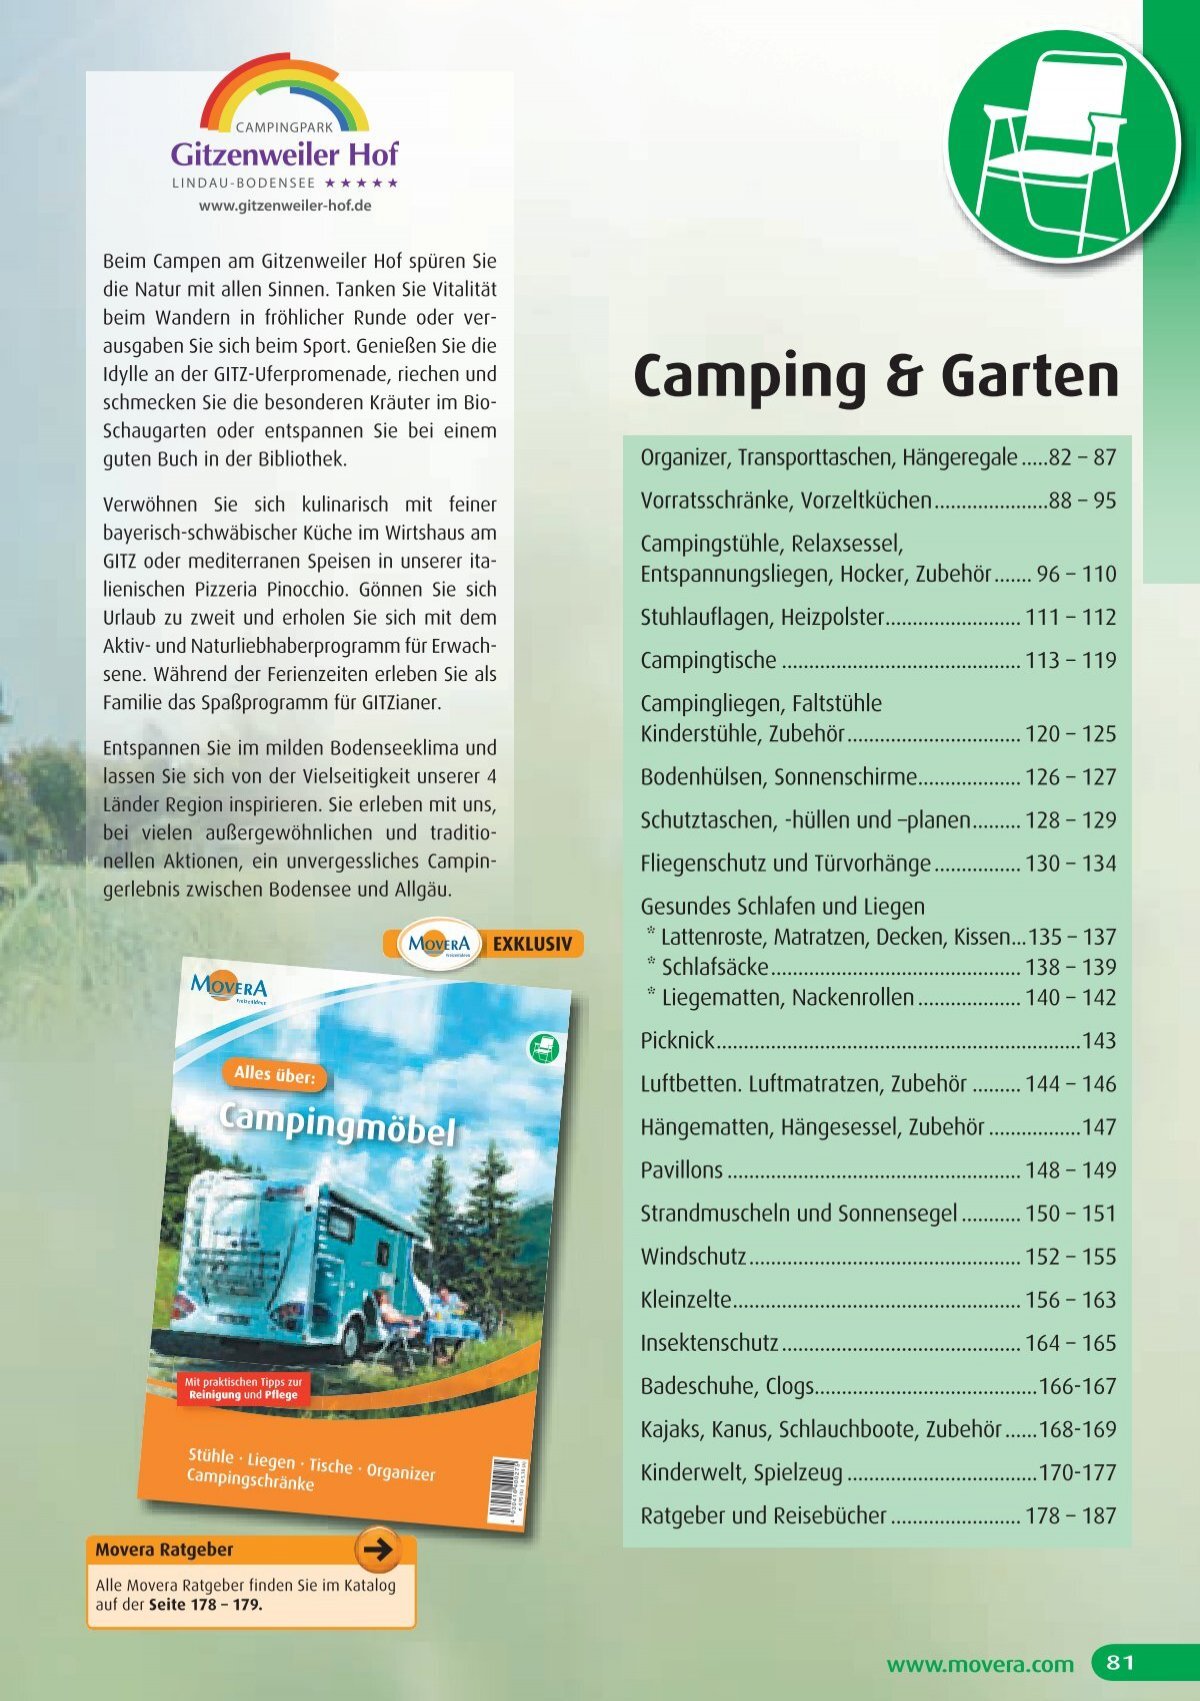 Camping & Garten